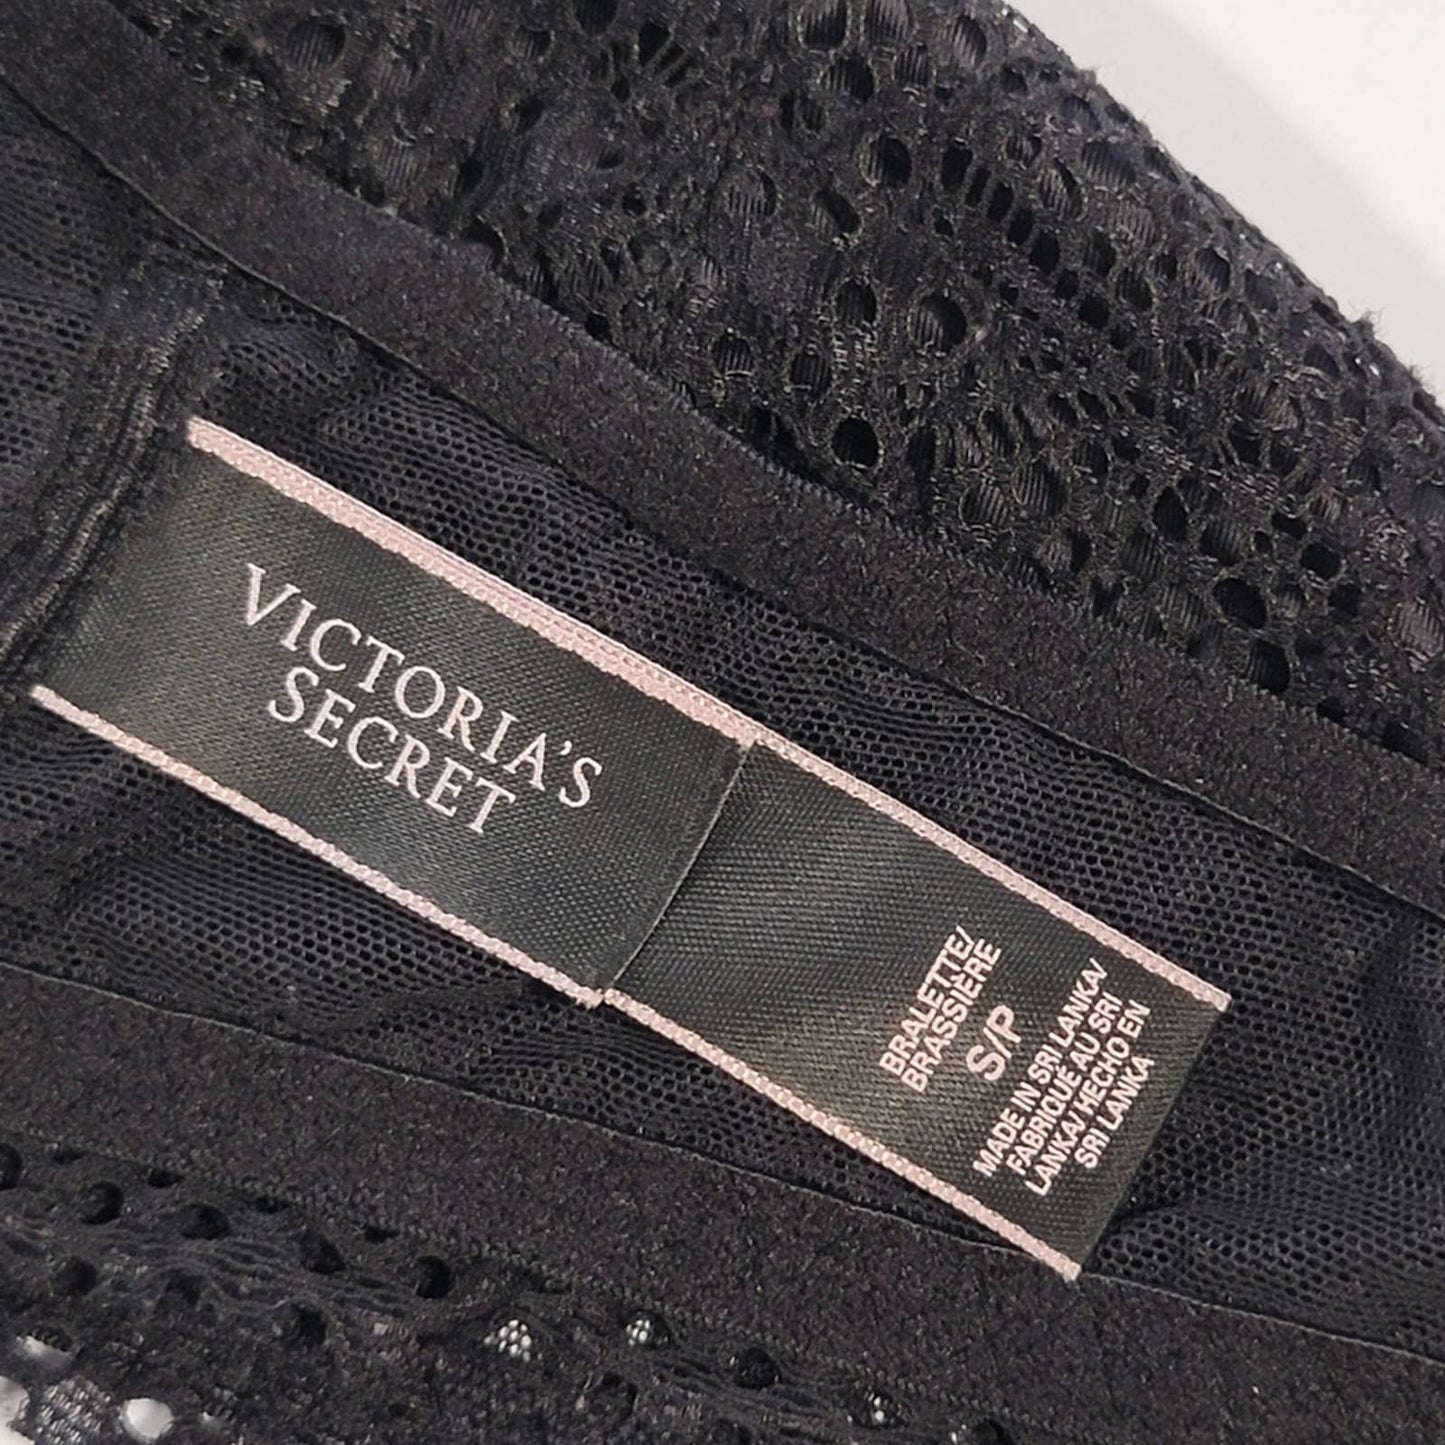 Victoria's Secret Black Lace Halter Bralette - S